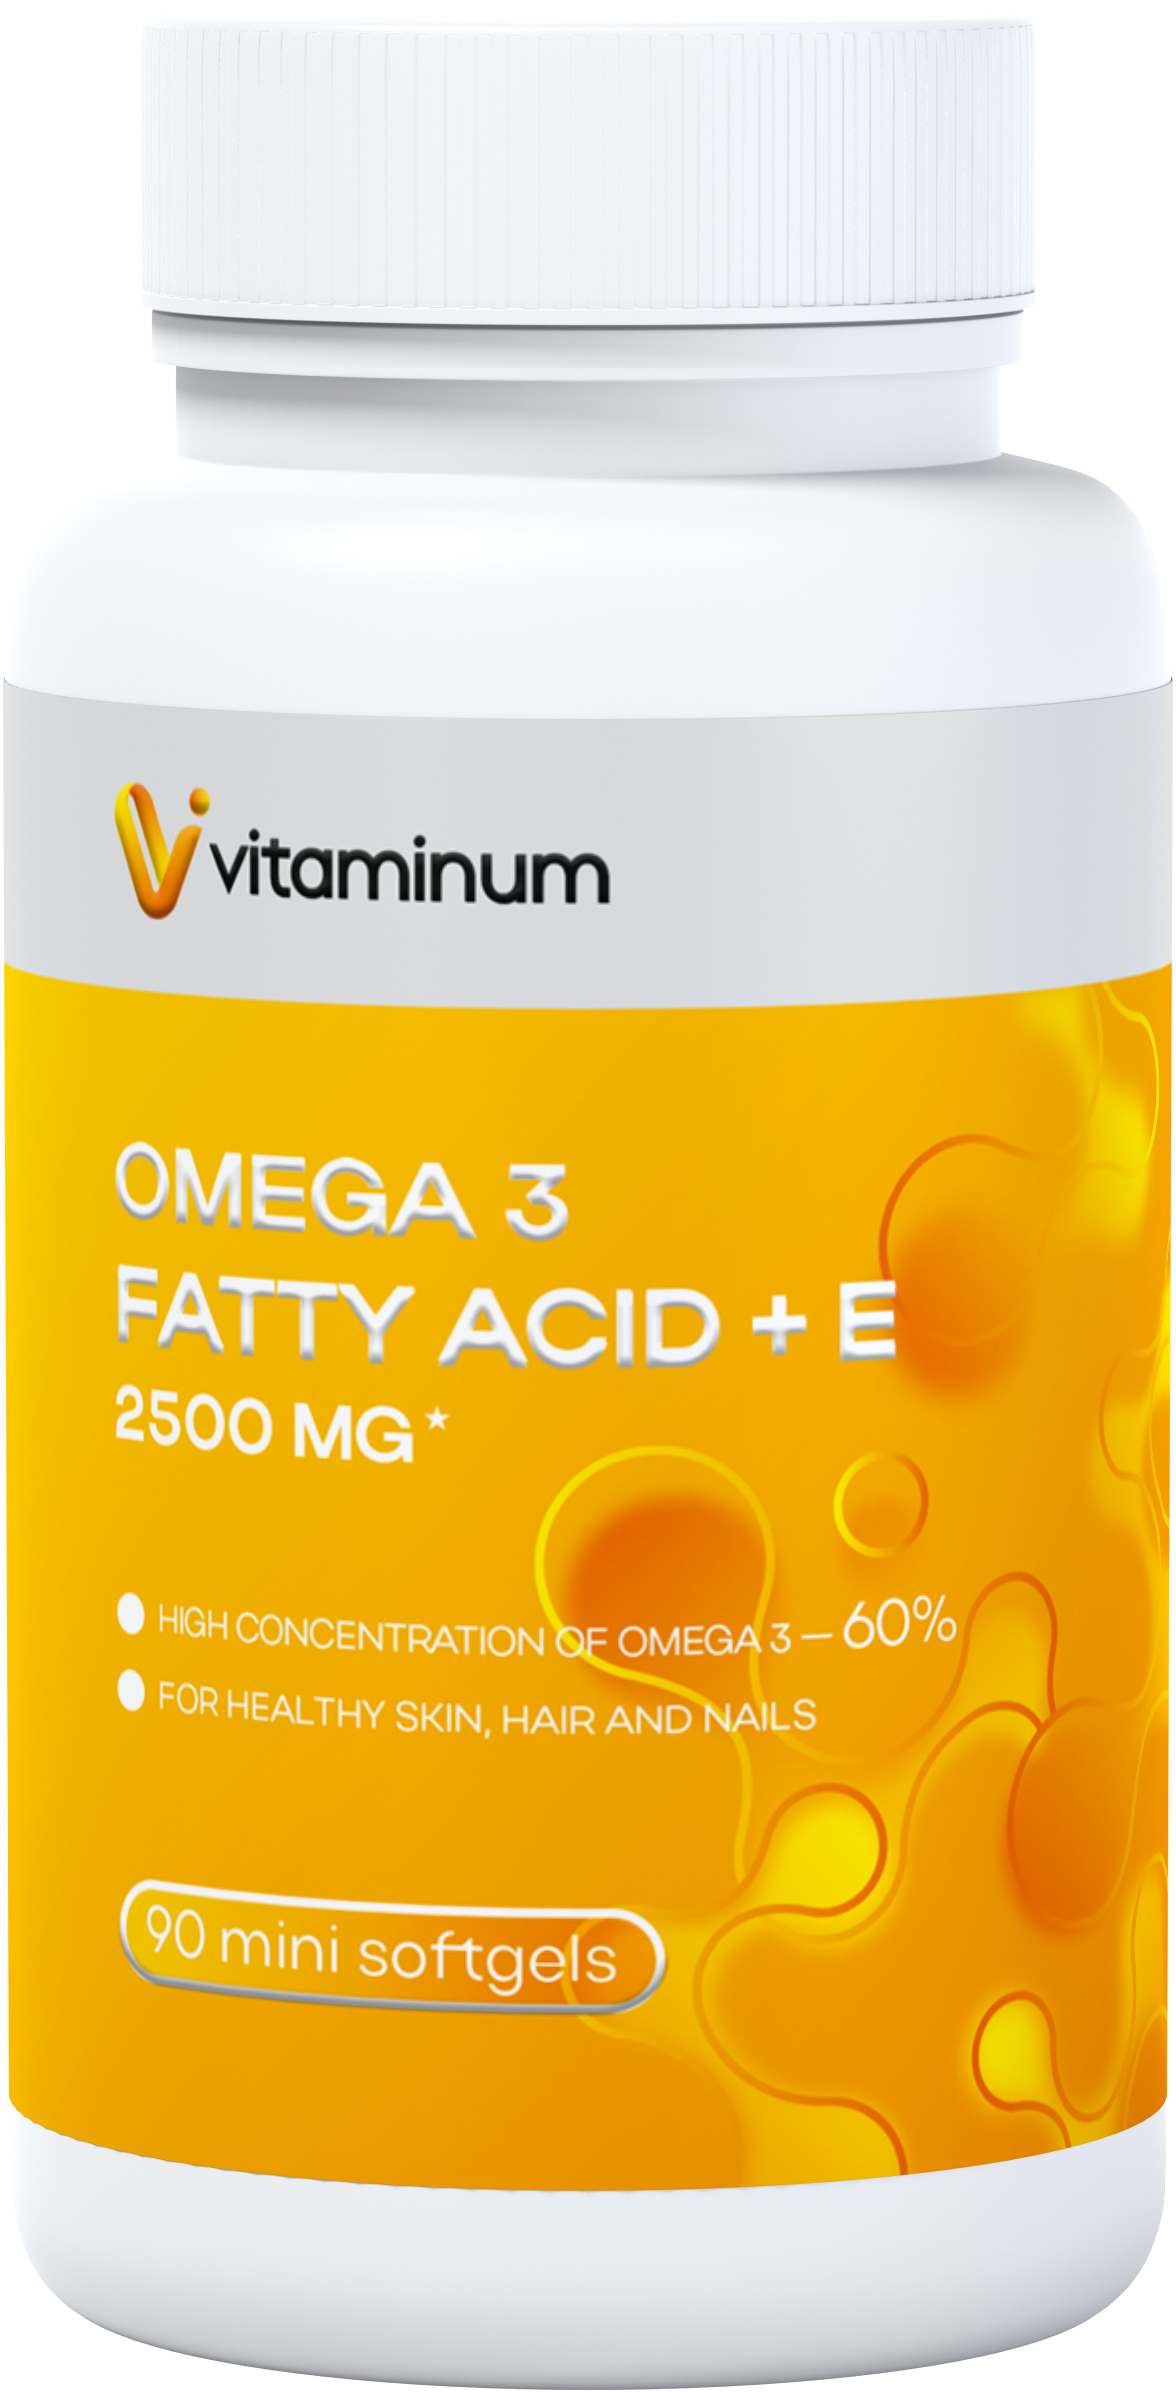  Vitaminum ОМЕГА 3 60% + витамин Е (2500 MG*) 90 капсул 700 мг   в Северске